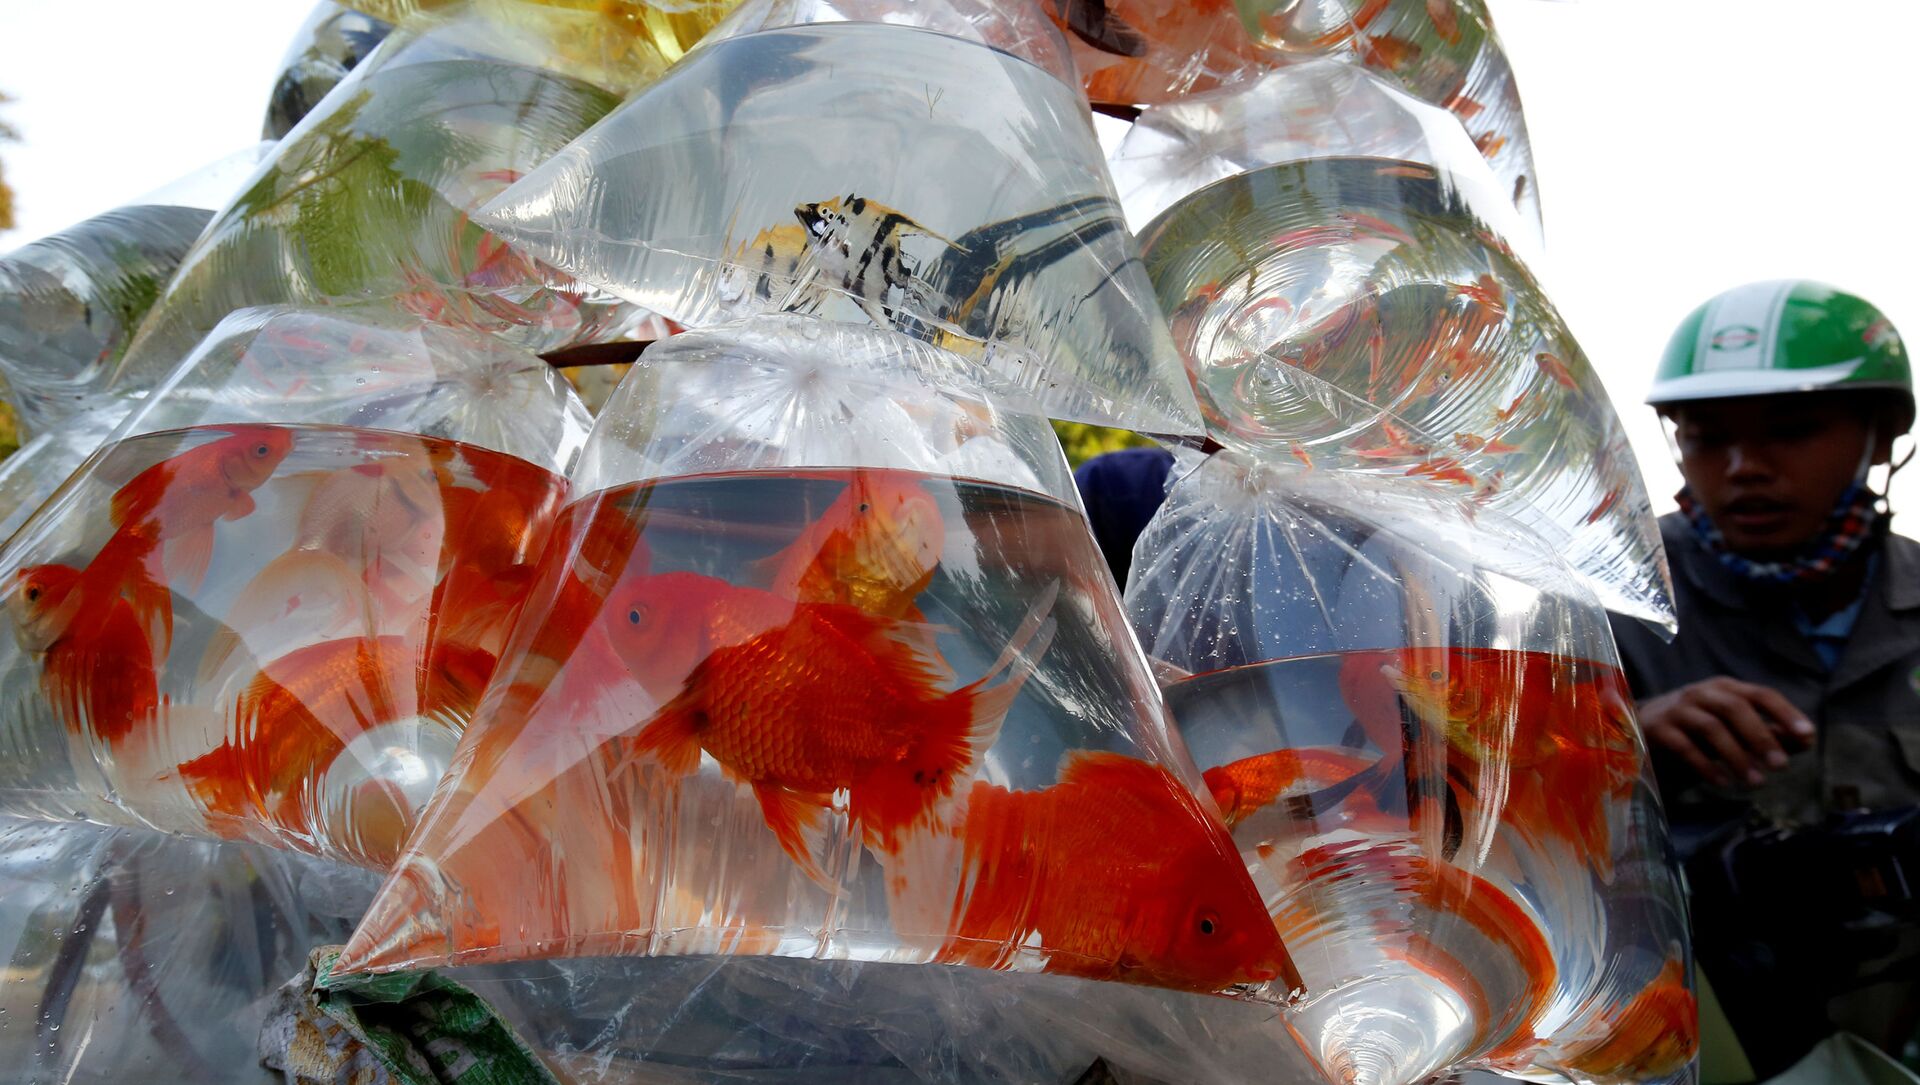 أسماك الزينة للبيع في أكياس بلاستيكية في شارع في هانوي، فيتنام 30 أكتوبر/ الأول 2018 - سبوتنيك عربي, 1920, 21.07.2021